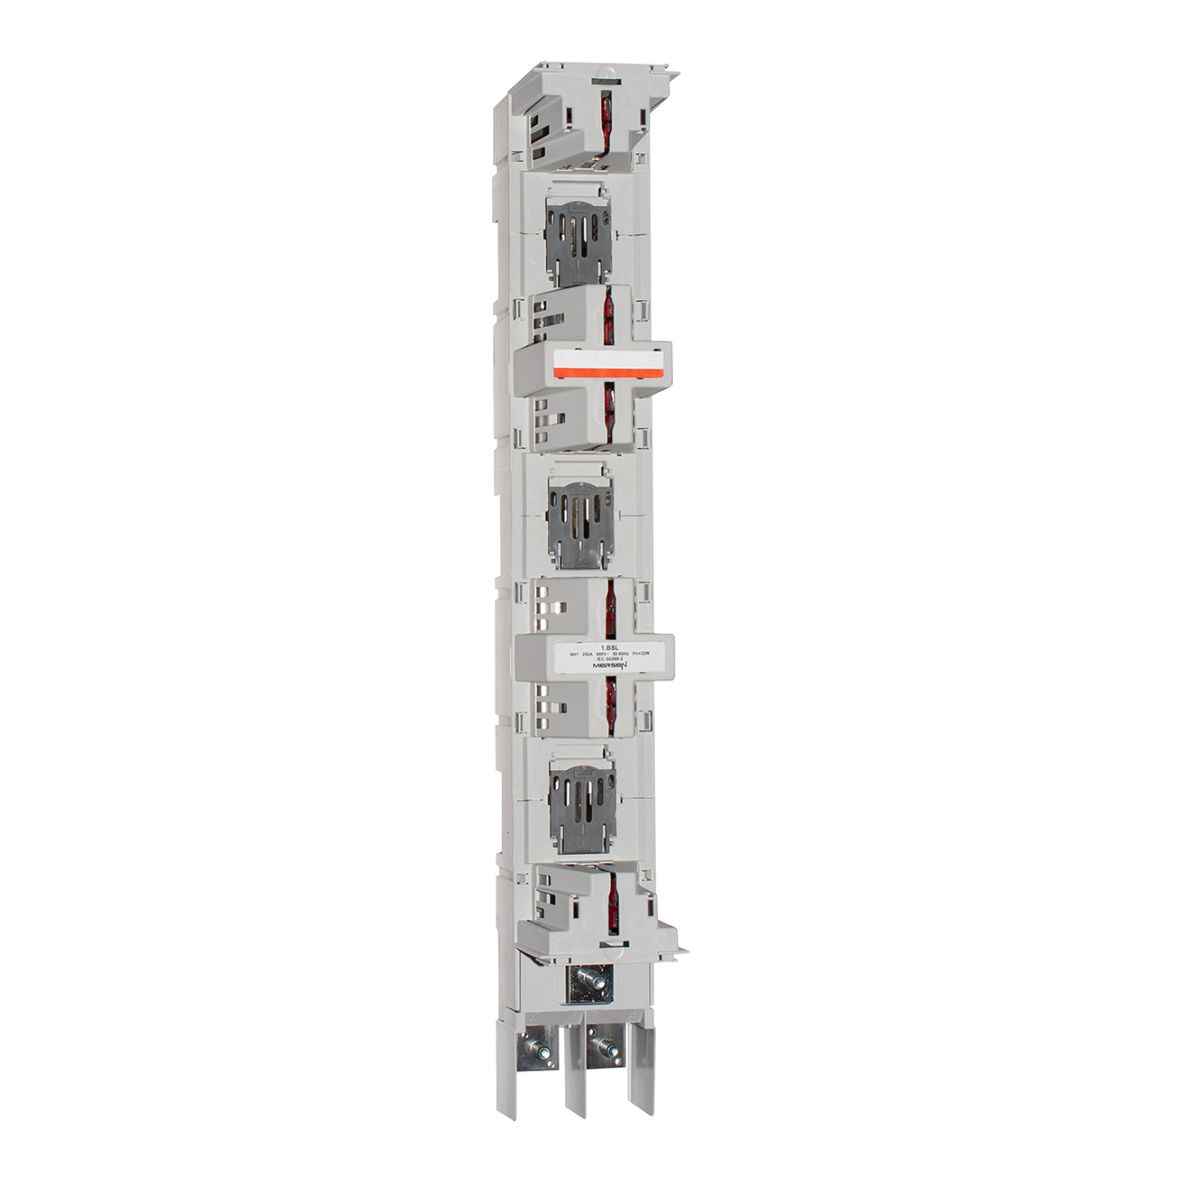 X1002291 - NH-vertical fuse rail BSL 250A M10 bolt